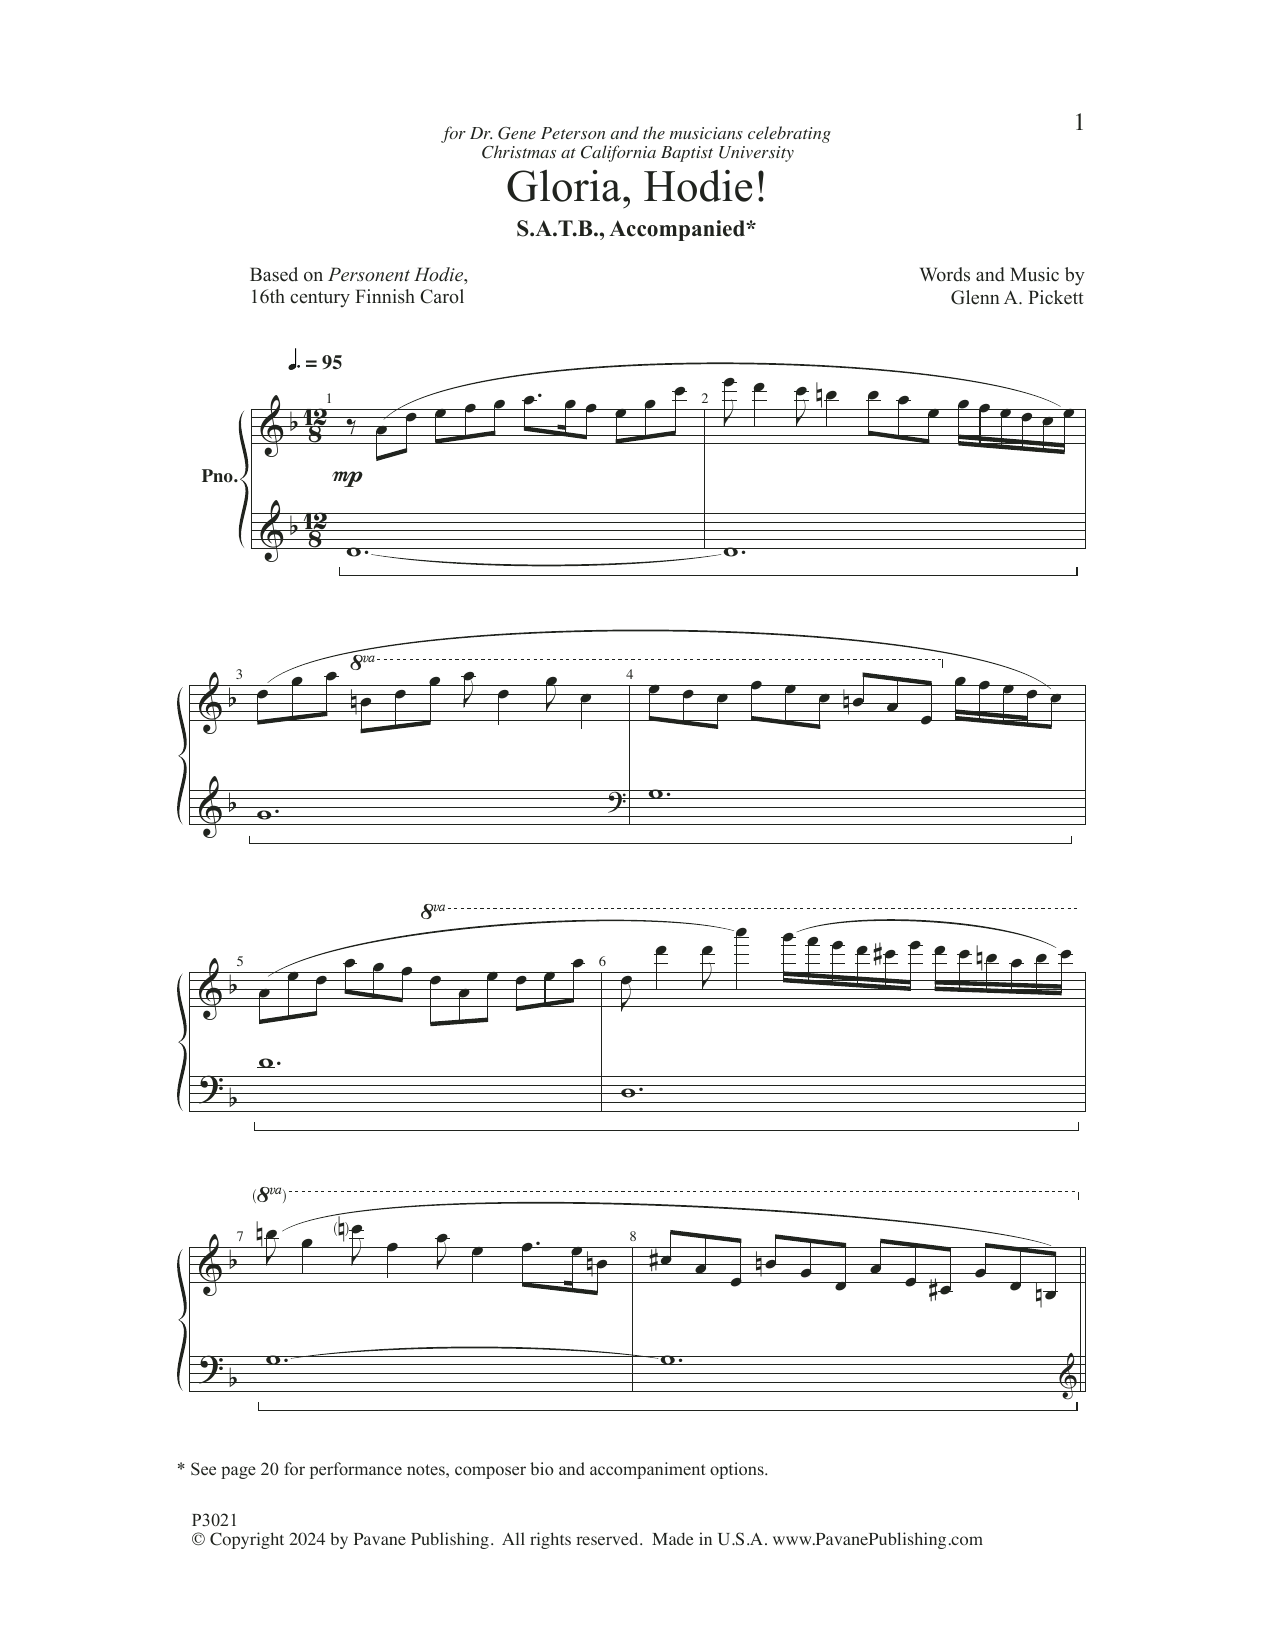 Glenn A. Pickett Gloria, Hodie! Sheet Music Notes & Chords for SATB Choir - Download or Print PDF